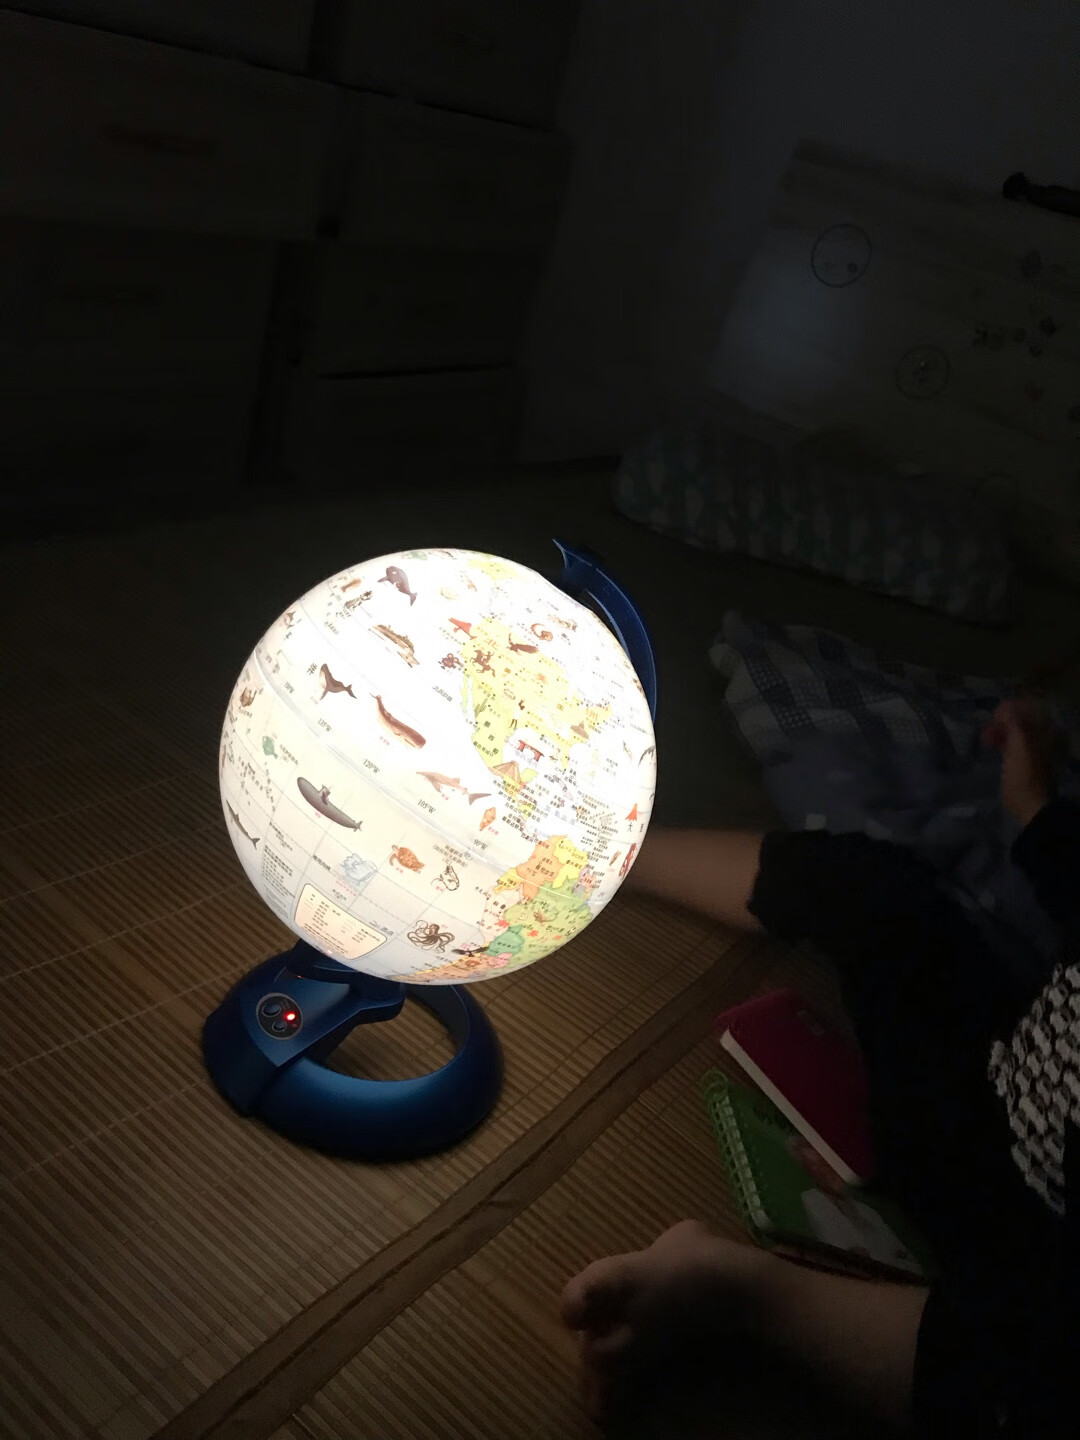 地球仪看起来普通，但是真的很惊喜，灯光柔和不刺眼 还可以定时30/60秒 孩子看着玩着就睡着了 操作也简单。等大一点还可以陪他讲地球各个地方的故事 超棒的